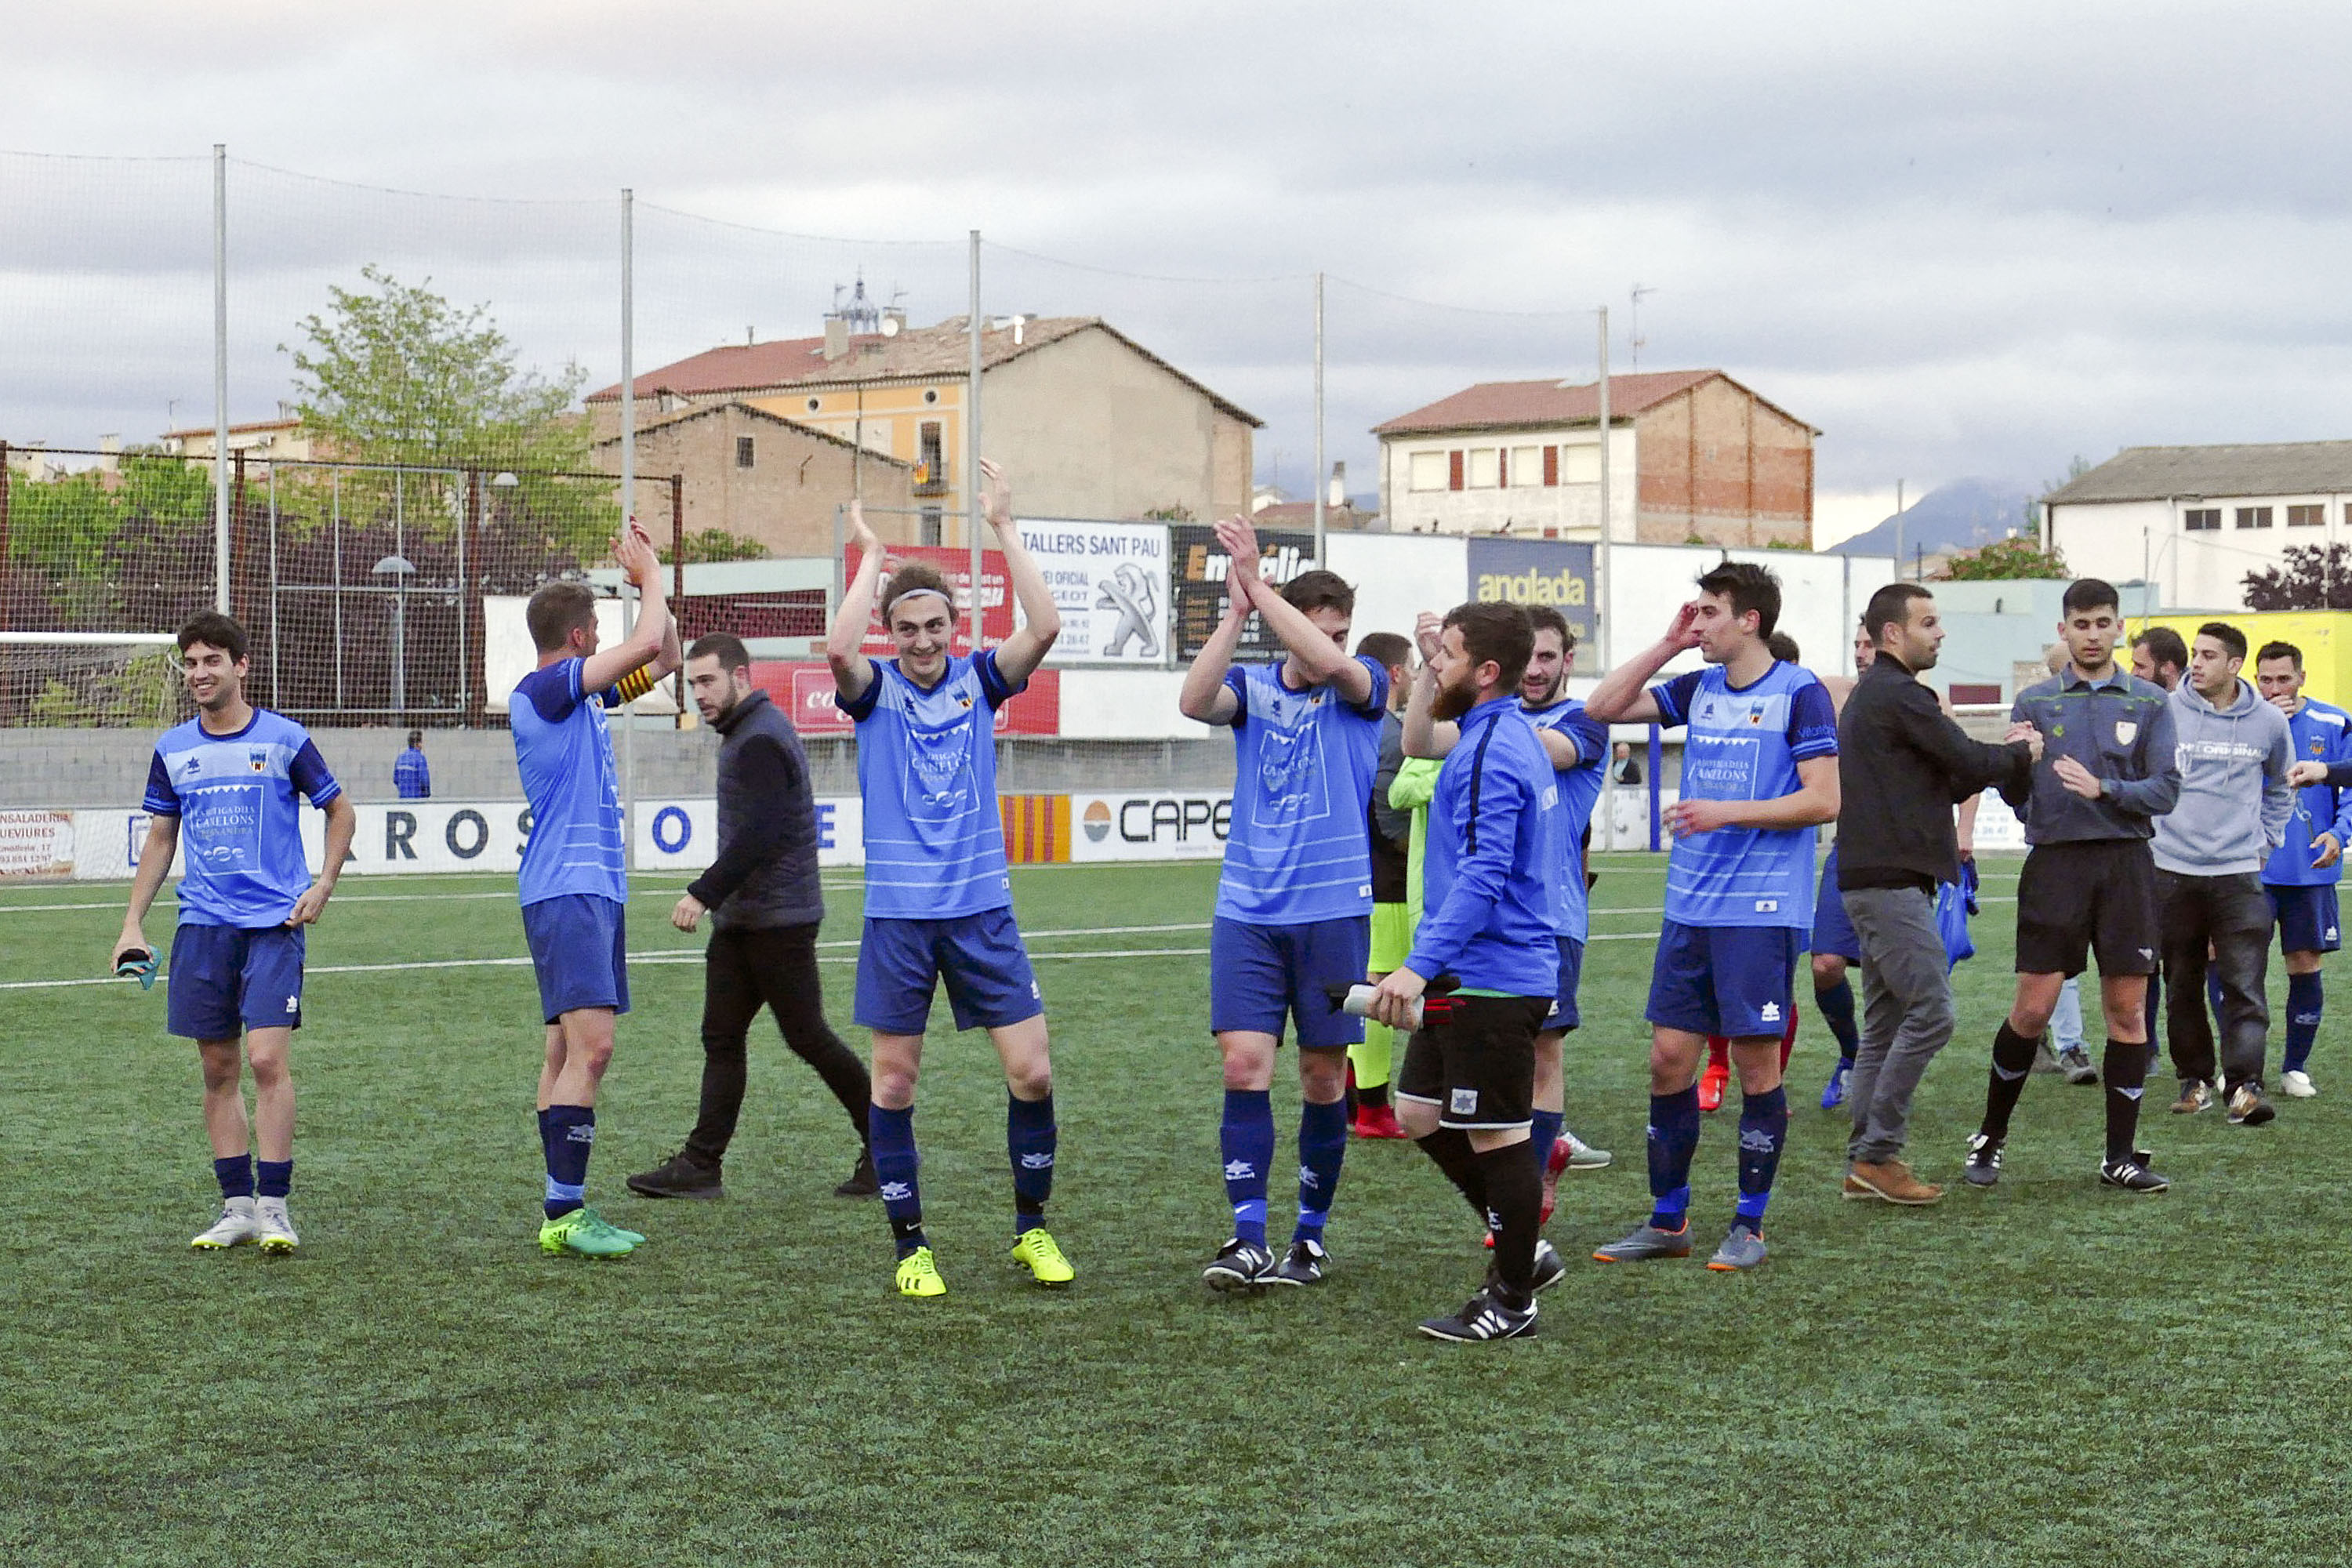 Lautor del gol de la victòria, Ramon Cunill, amb botes grogues, celebra la victòria amb els seus companys